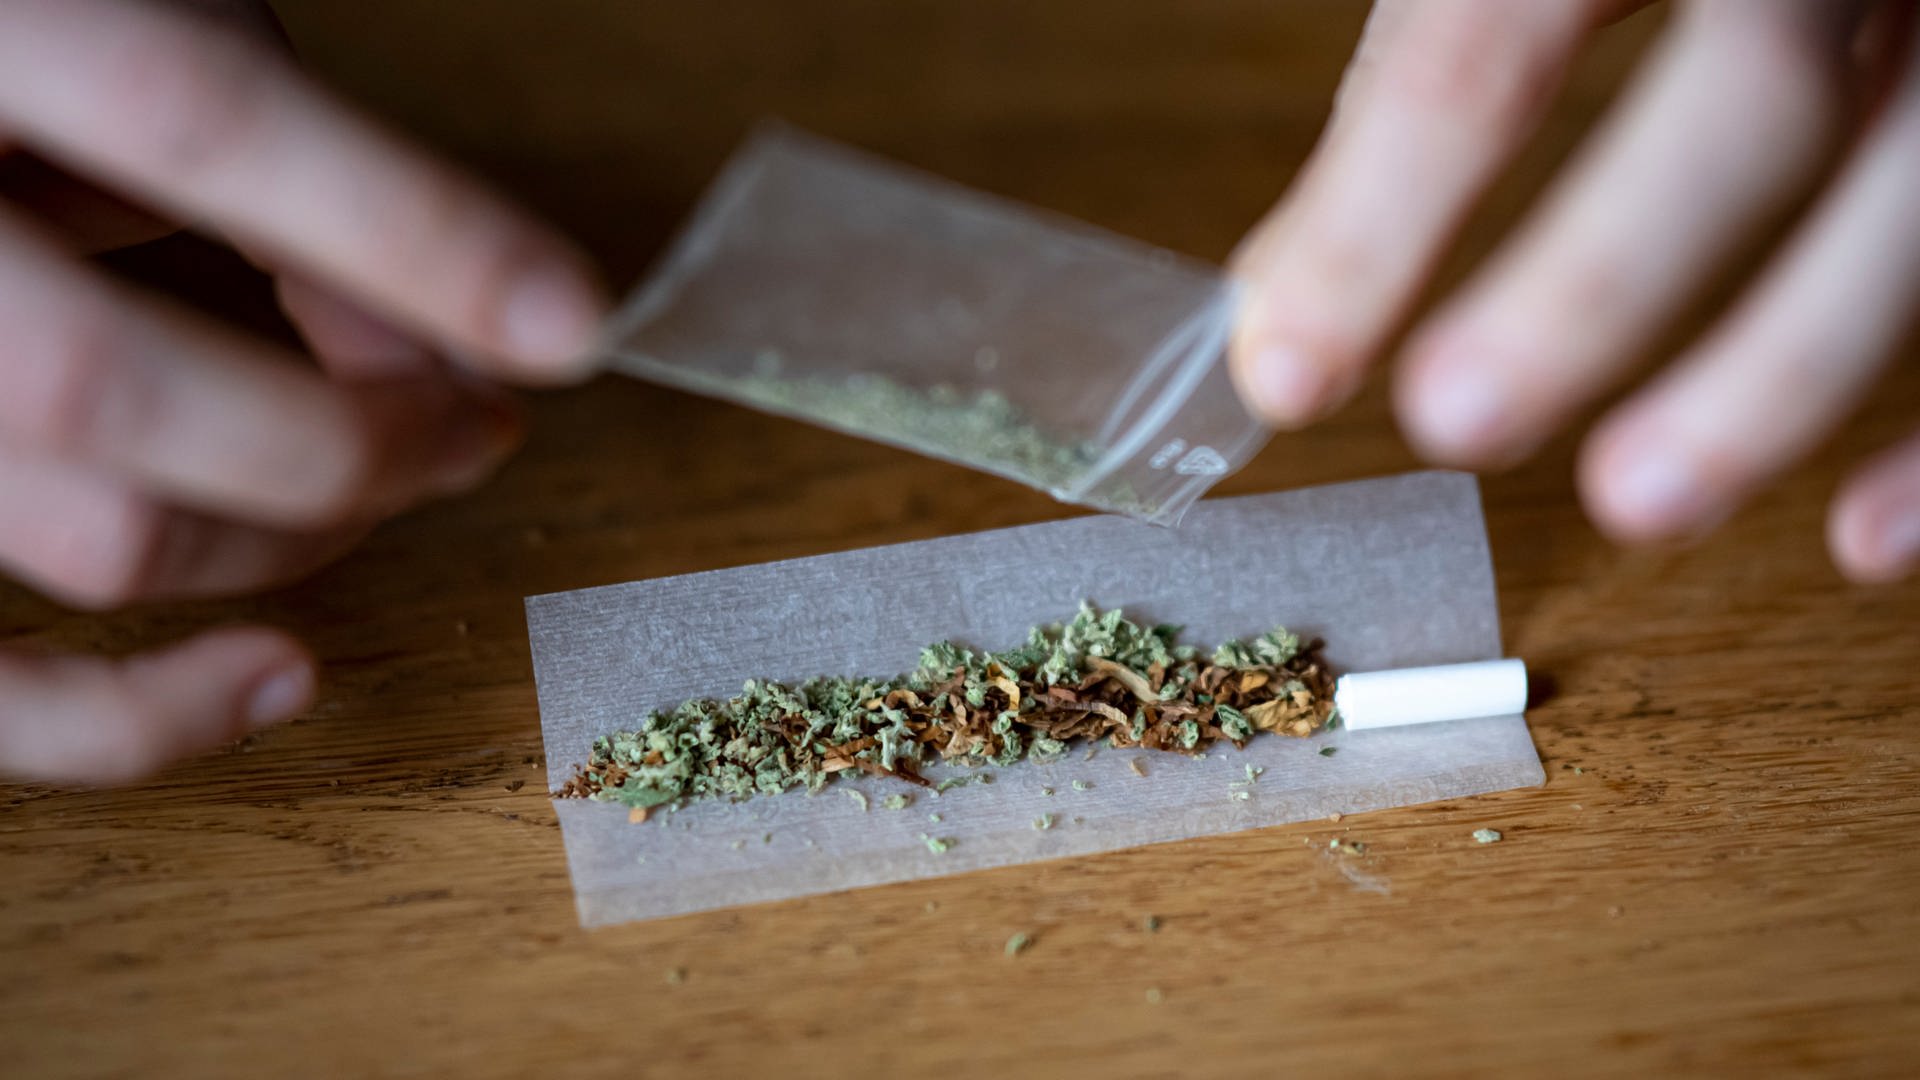 ++ Cannabis-Legalisierung ++ Sturmschäden ++ Mainz 05 beim Tabellenführer ++